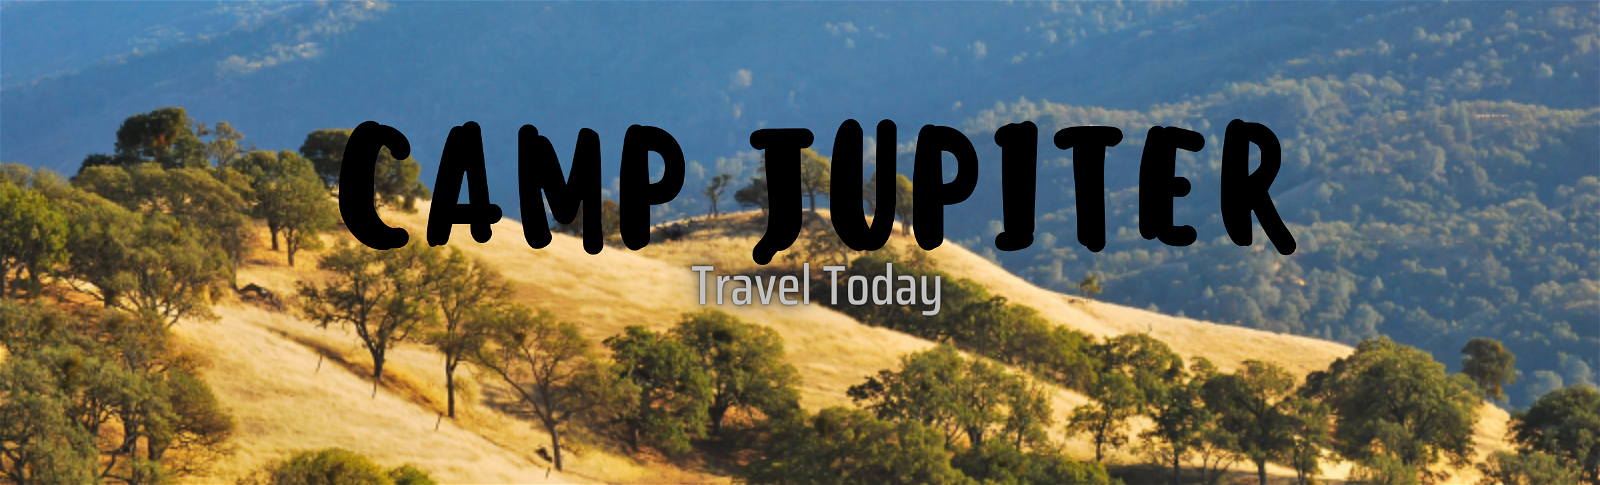 Vacation Spot: Camp Jupiter